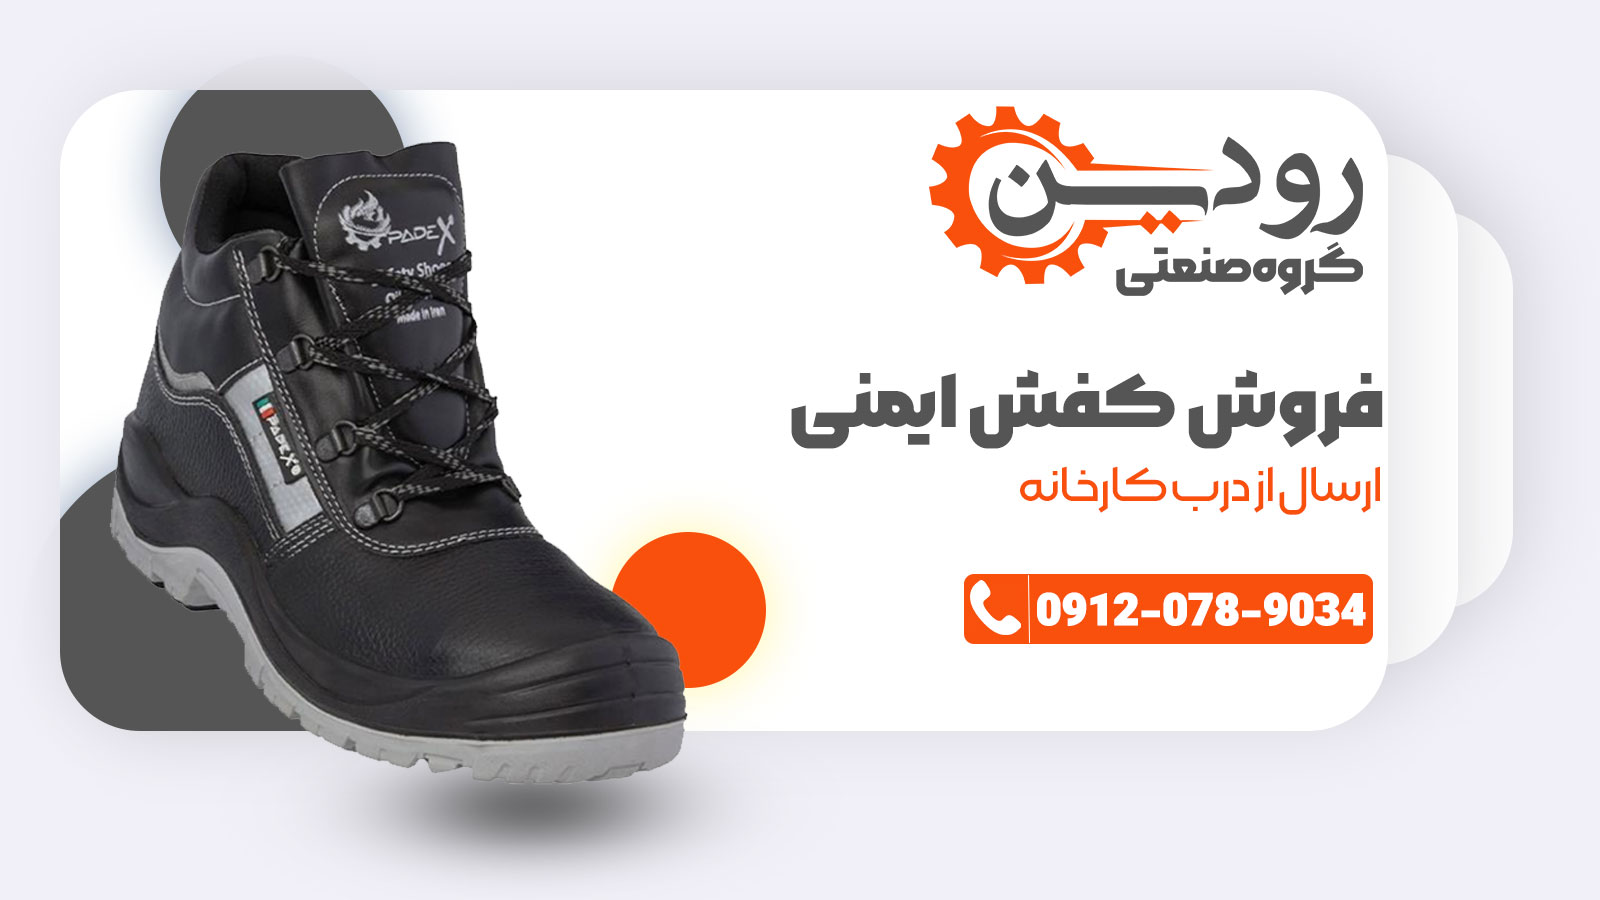 فروش عمده در فروشگاه کفش ایمنی اصفهان وجود دارد.